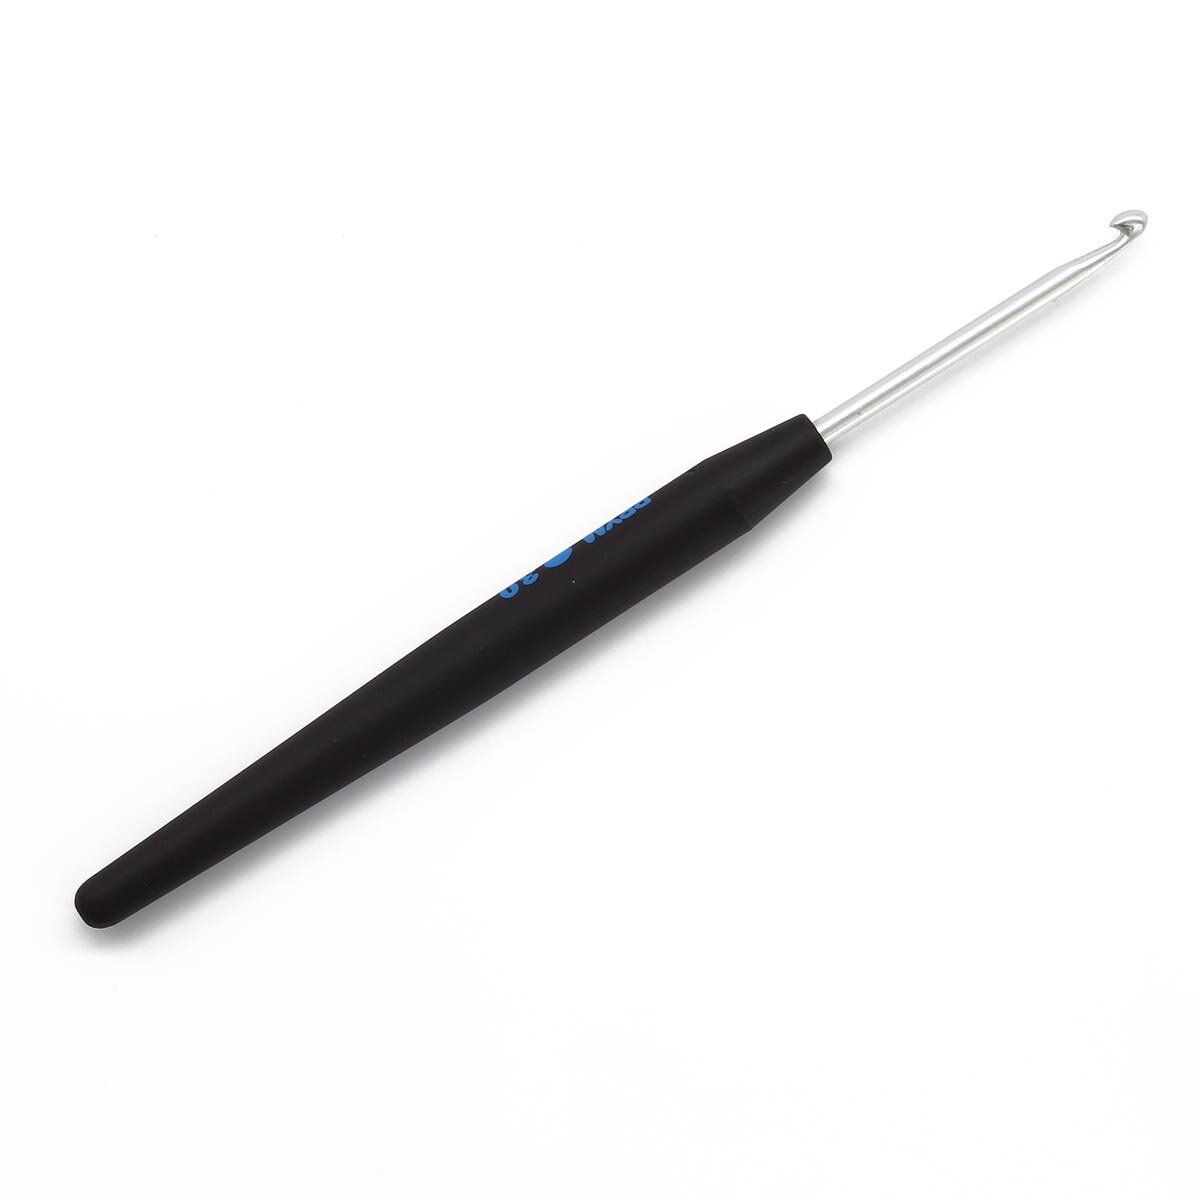 195174 Крючок SOFT вязальный с мягкой ручкой, алюминий, 3мм*14см, Prym